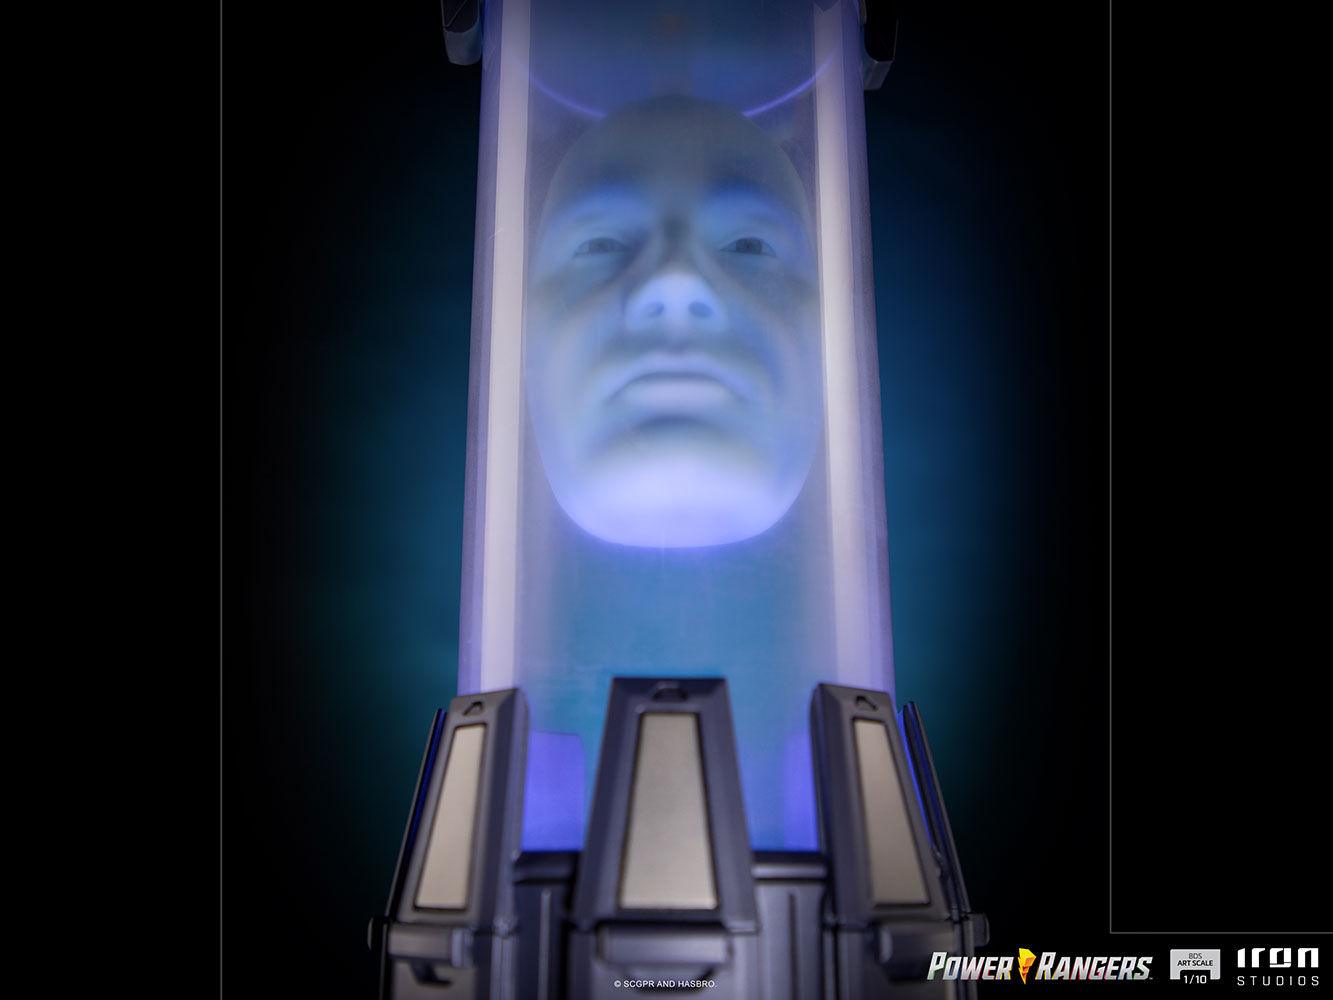 IRO28211 Power Rangers - Zordon 1:10 Scale Statue - Iron Studios - Titan Pop Culture